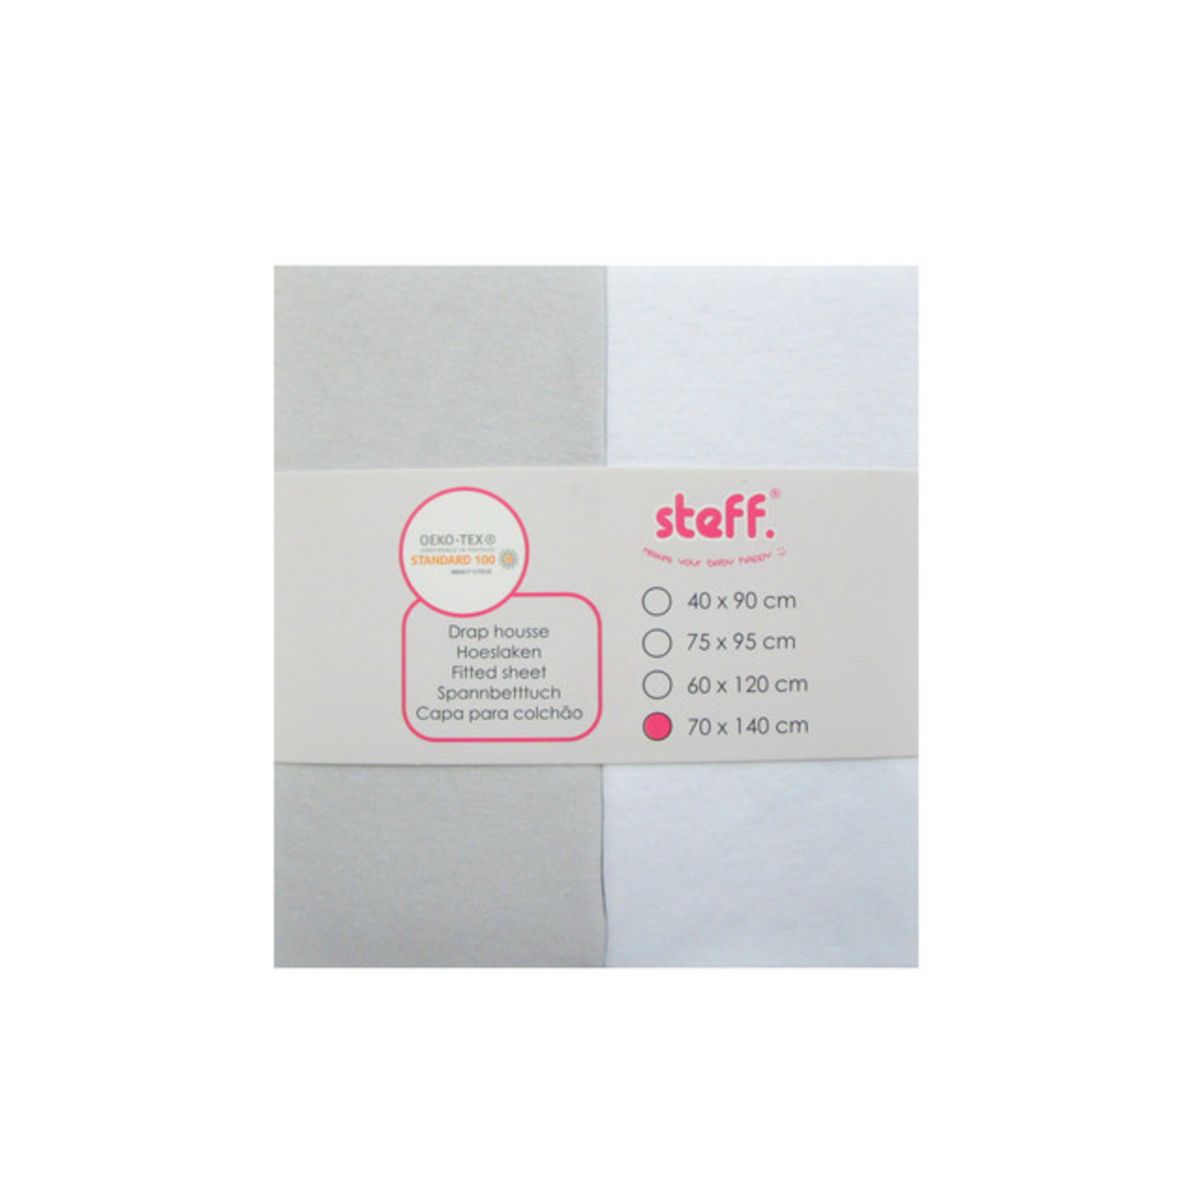 Steff - Drap housse - 70x140 cm - jersey coton - lot de 2 Blanc + Gris -  Label de qualité OEKO tex standard 100 pas cher 